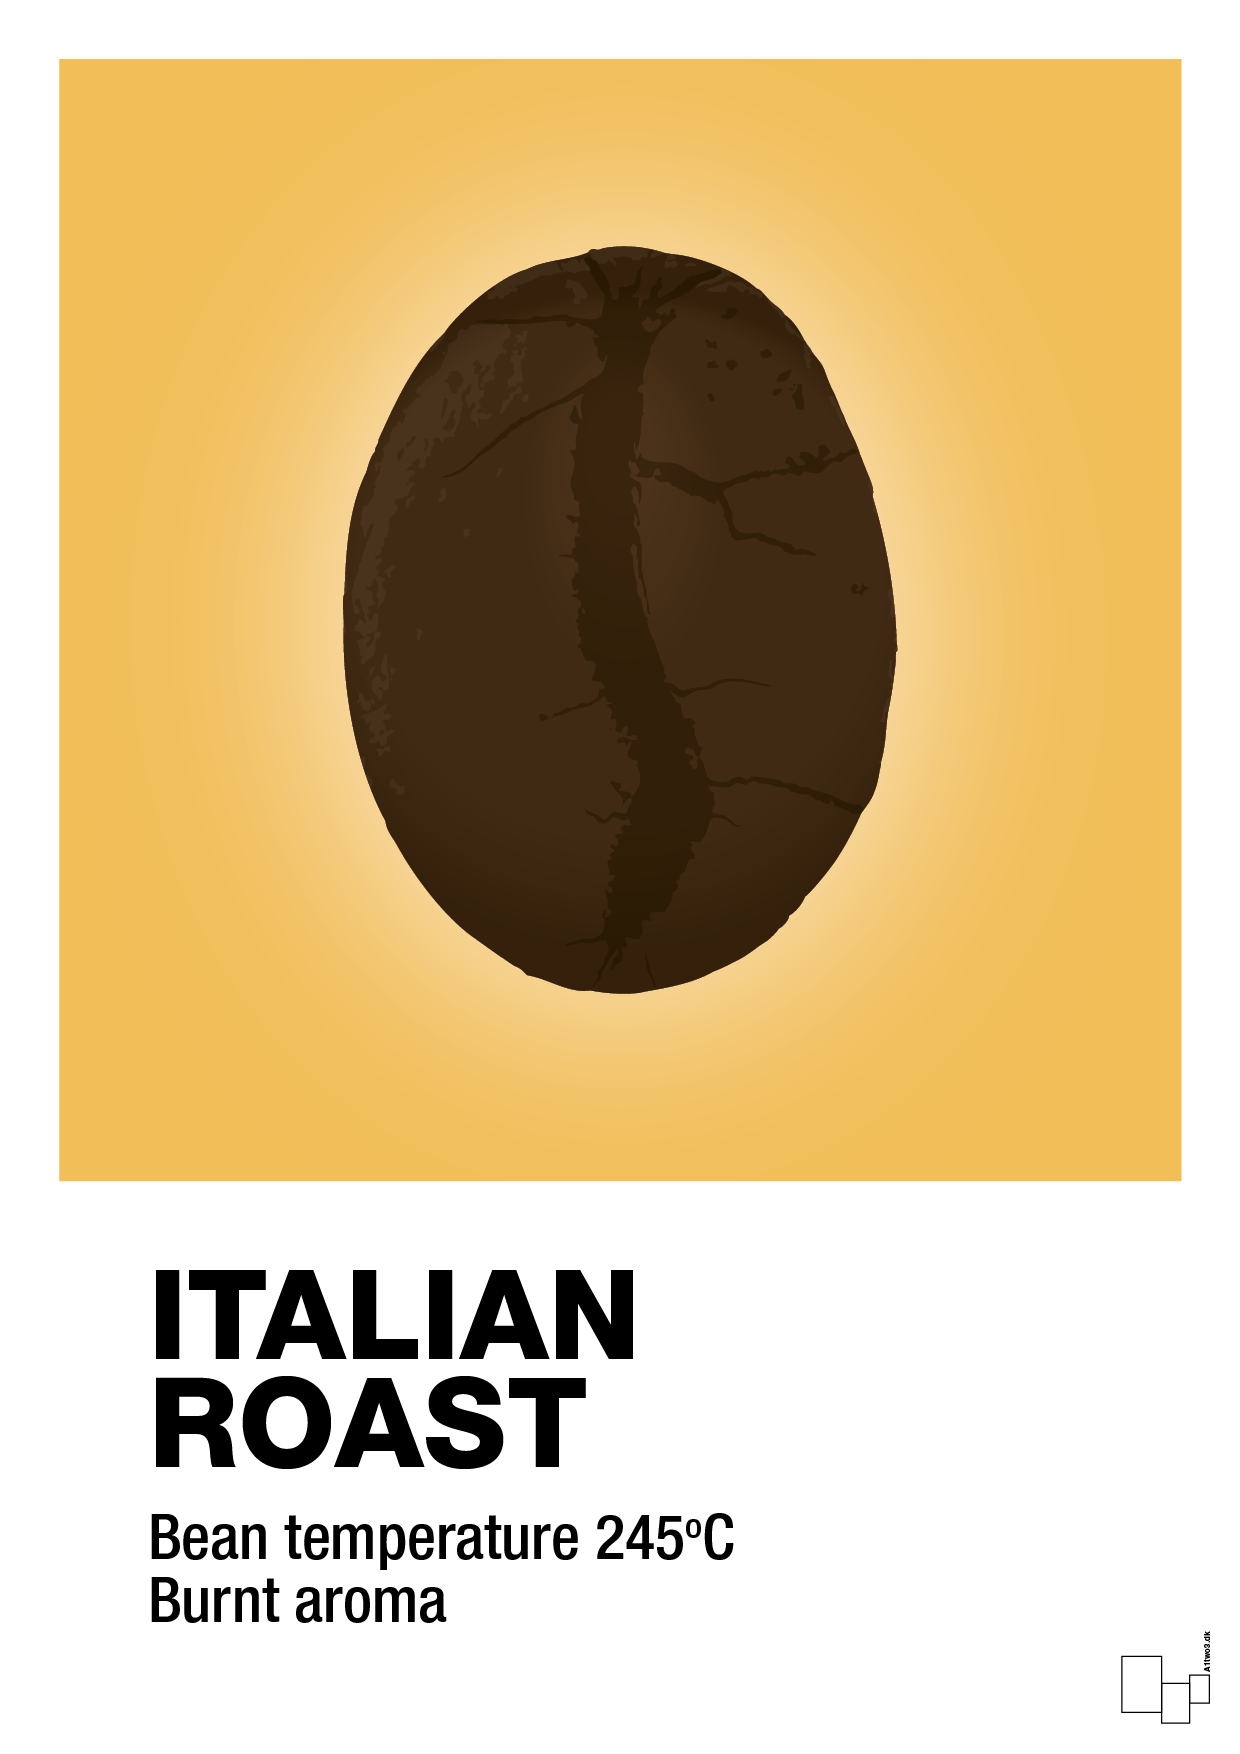 italian roast - Plakat med Mad & Drikke i Honeycomb